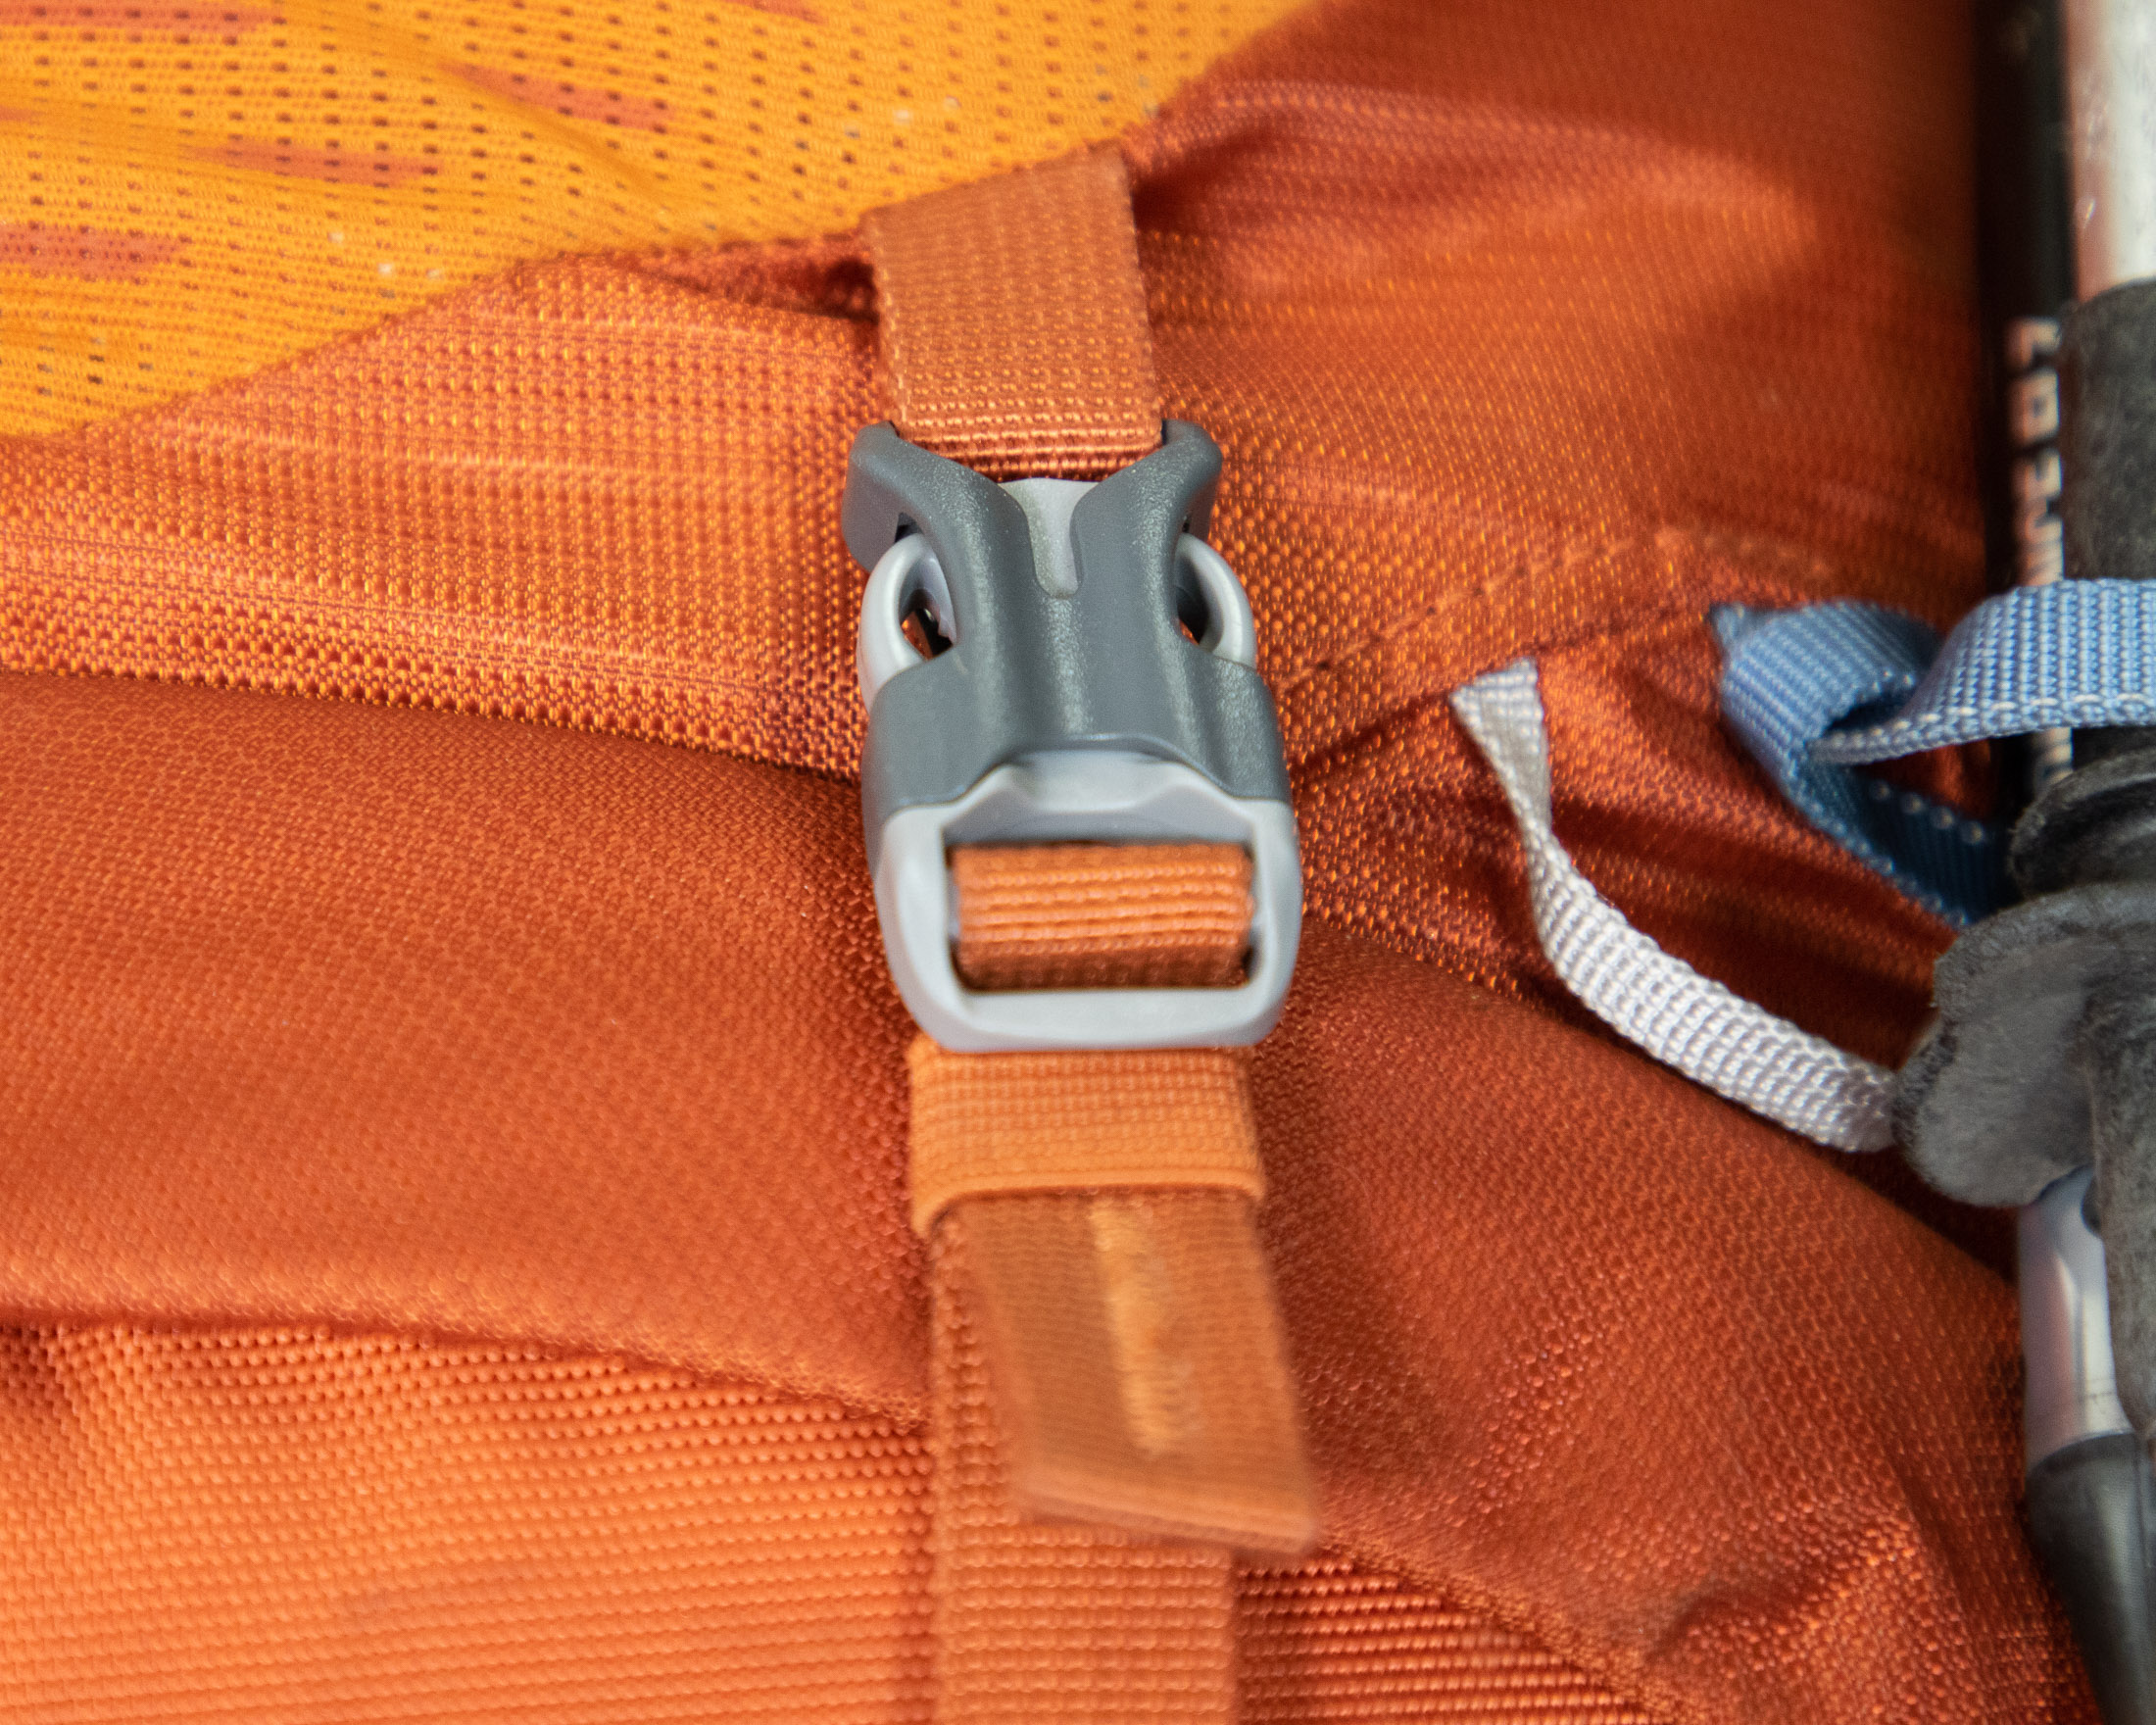 backpack compression strap